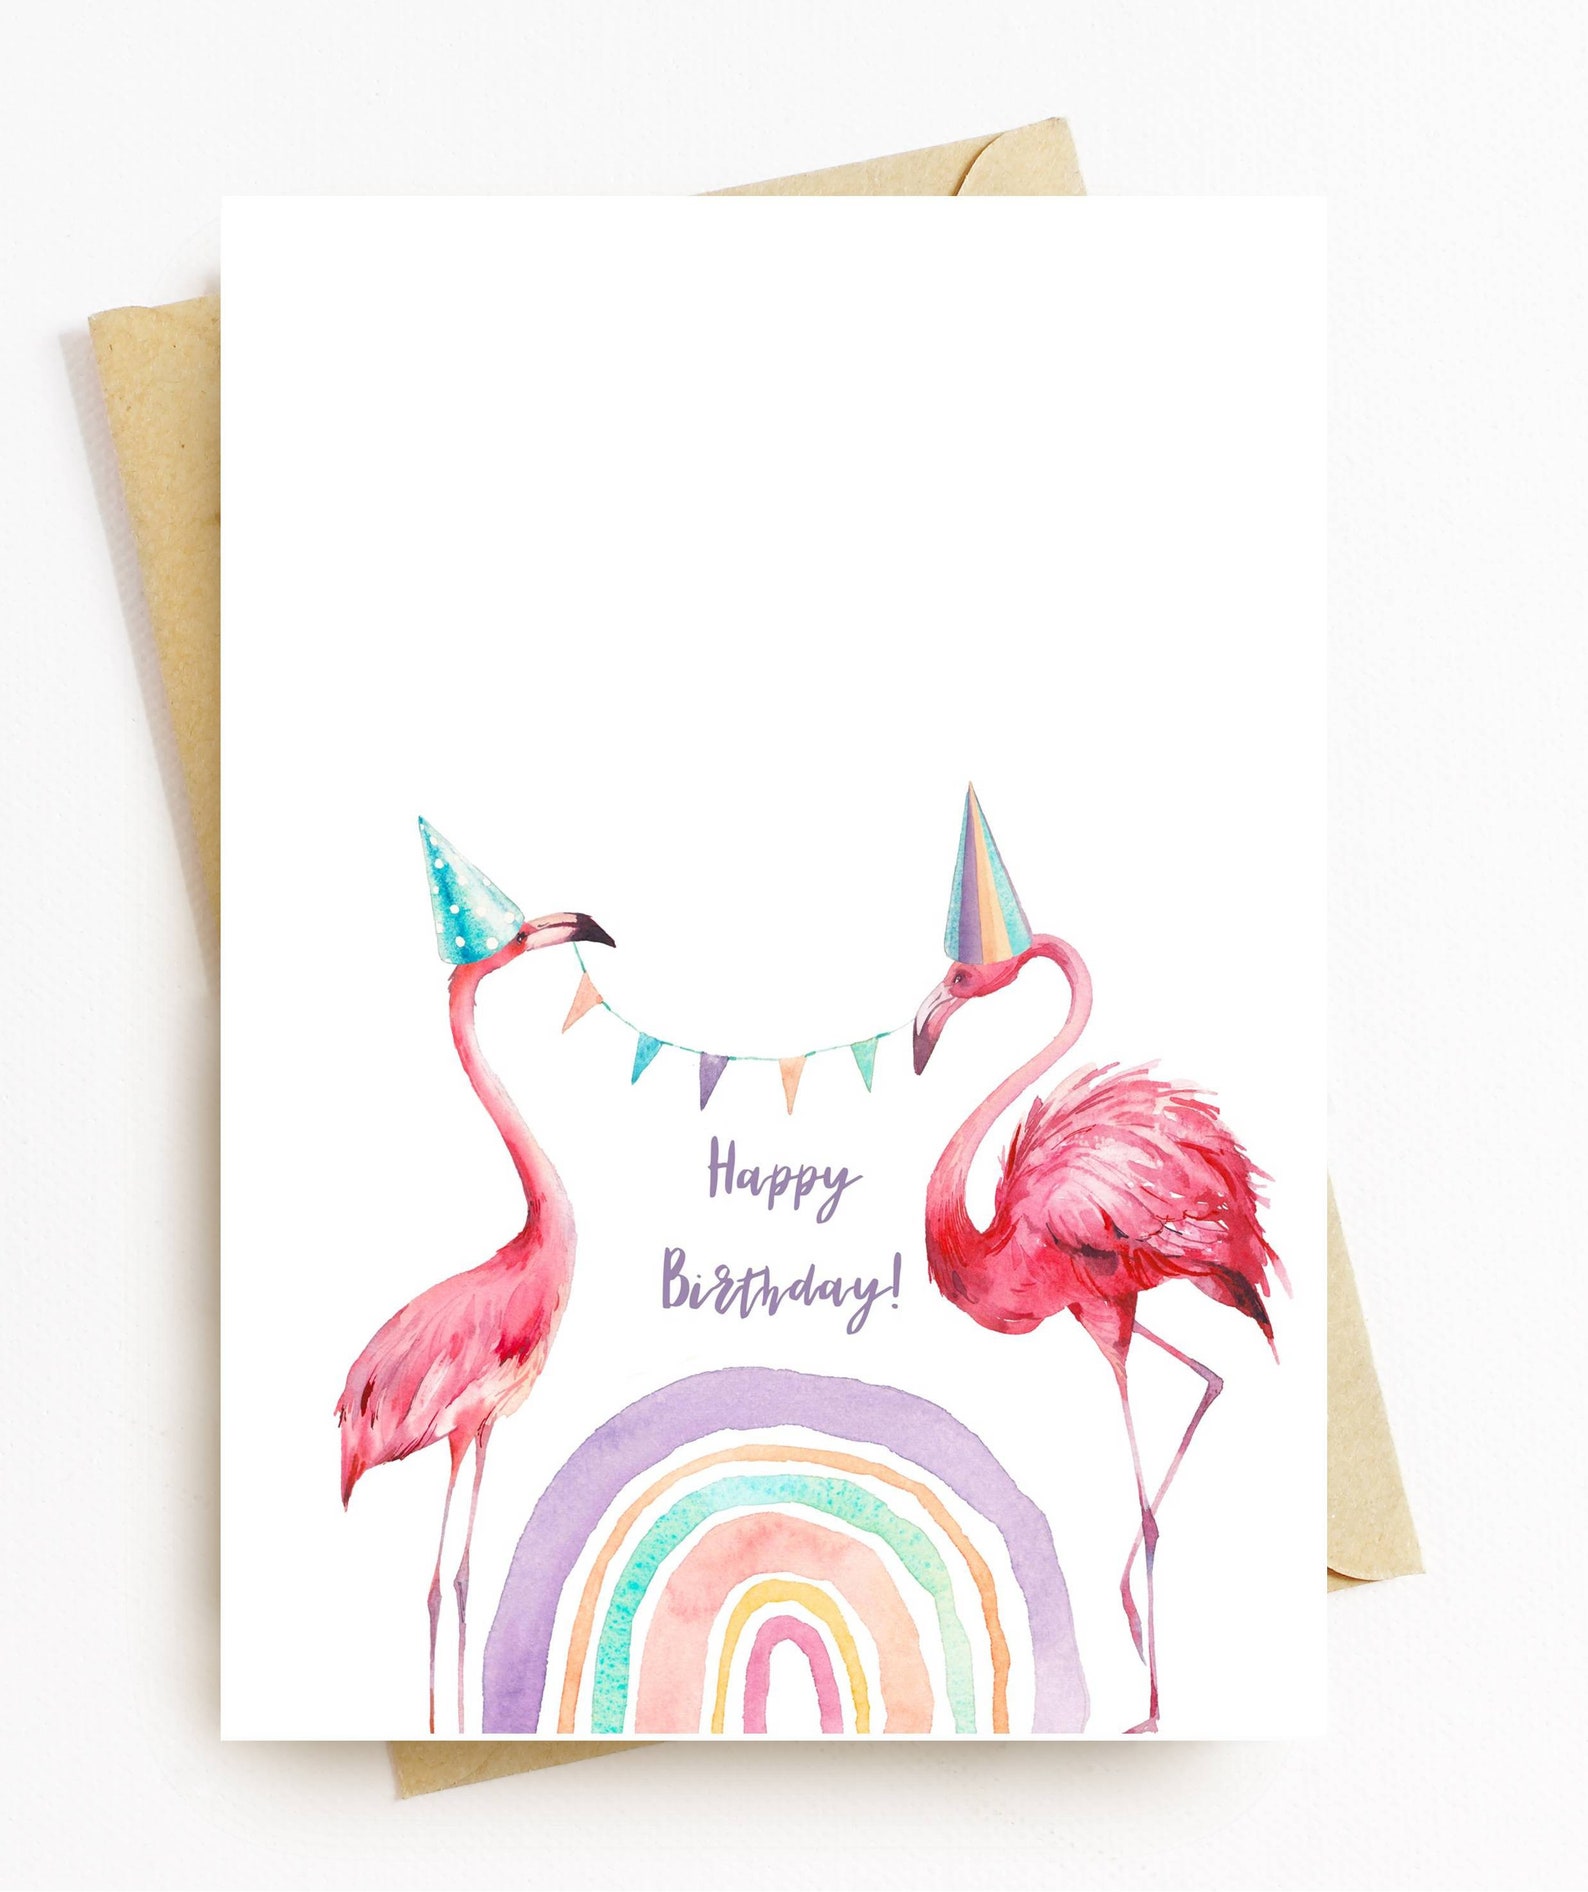 JE367 Happy Birthday Card Cute Flamingo and Rainbows - Etsy UK